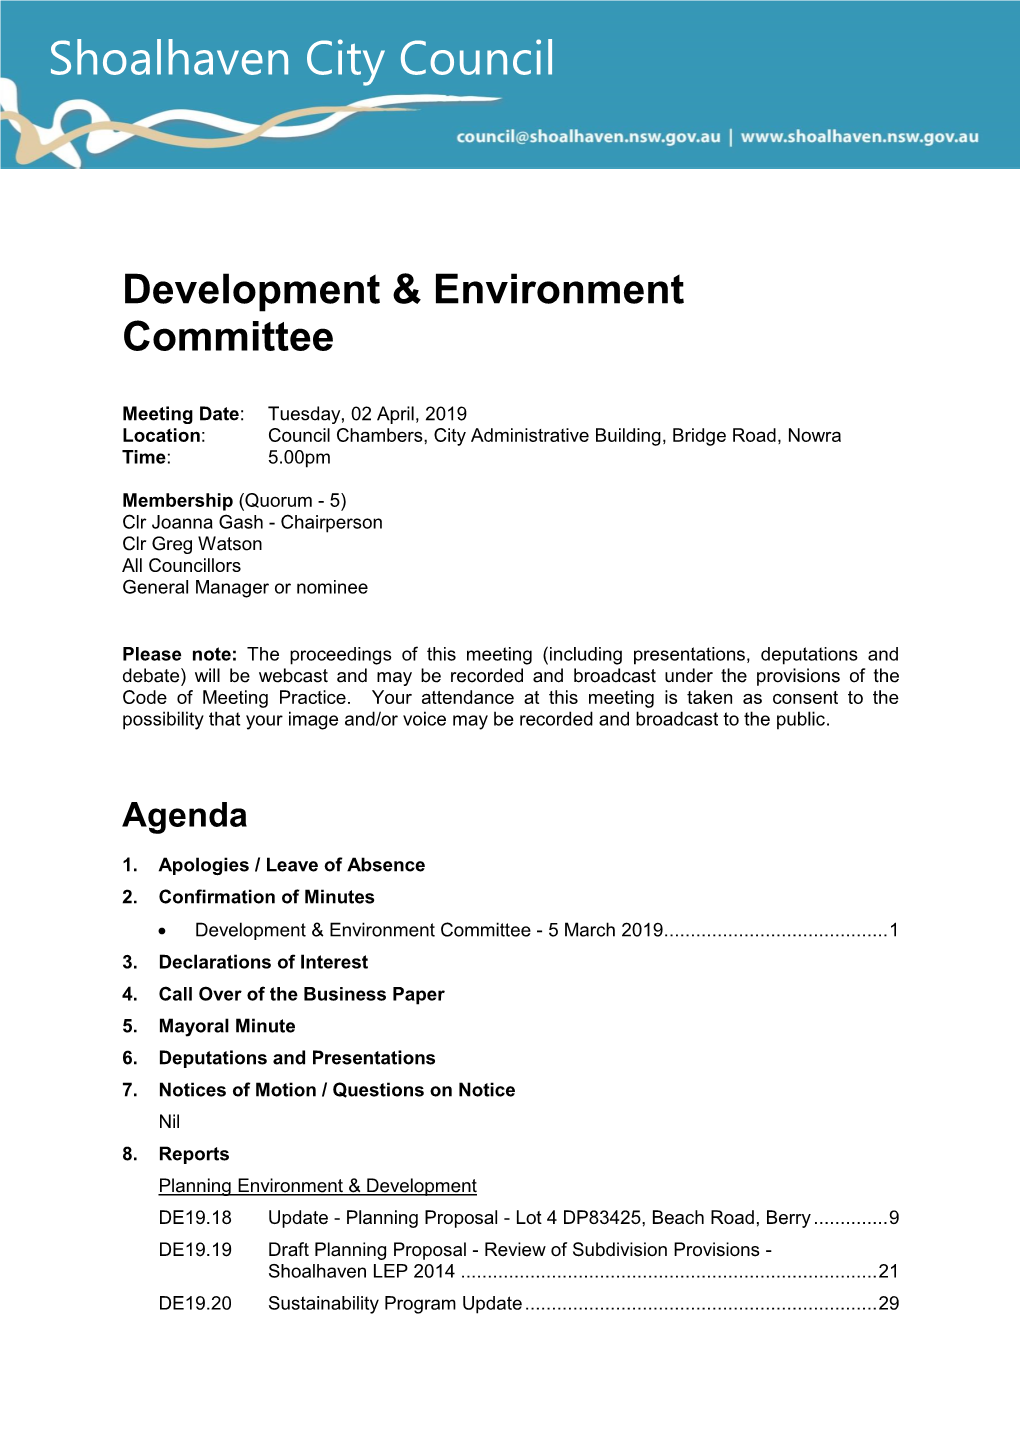 Agenda of Development & Environment Committee